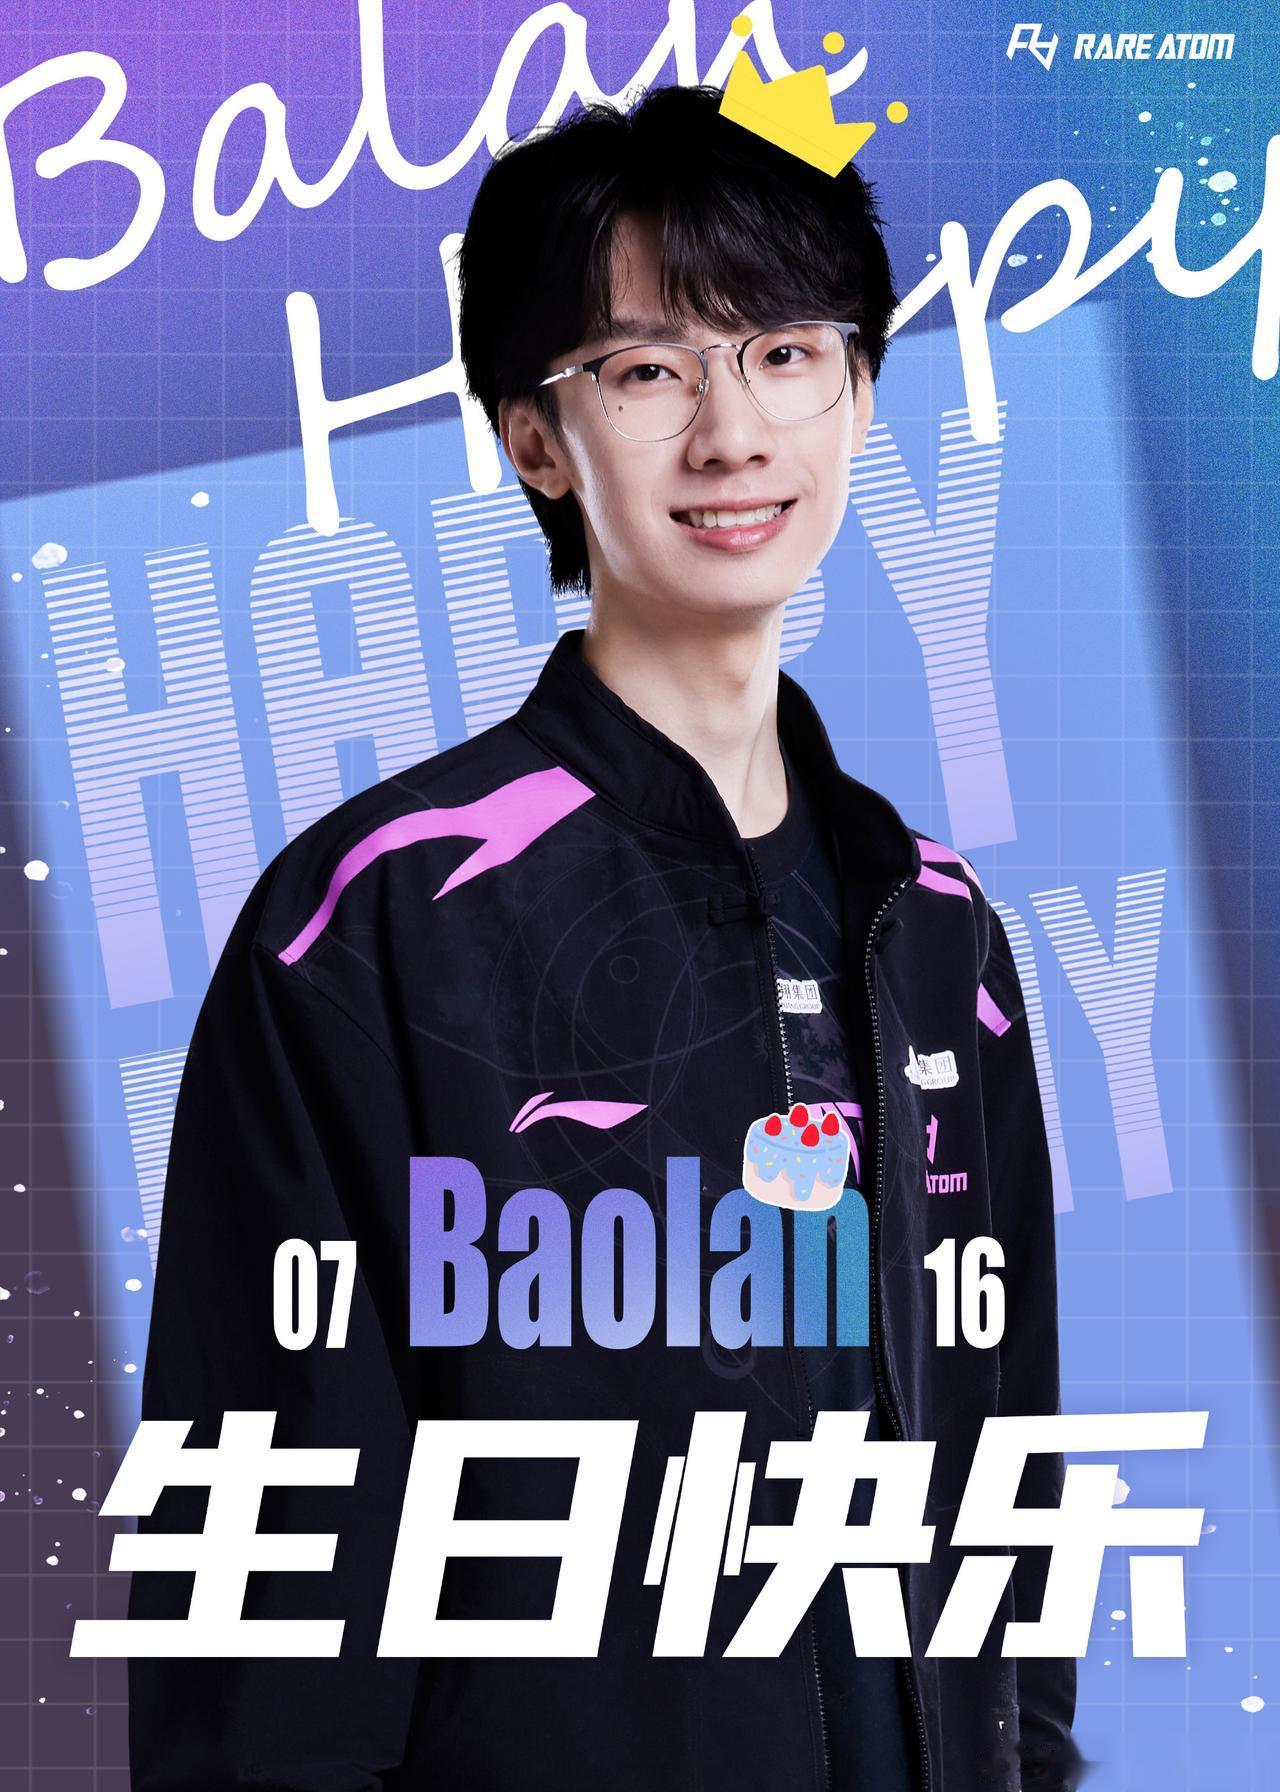  

今天是RA电子竞技俱乐部辅助选手王柳羿（ID：Baolan）的24岁生日~